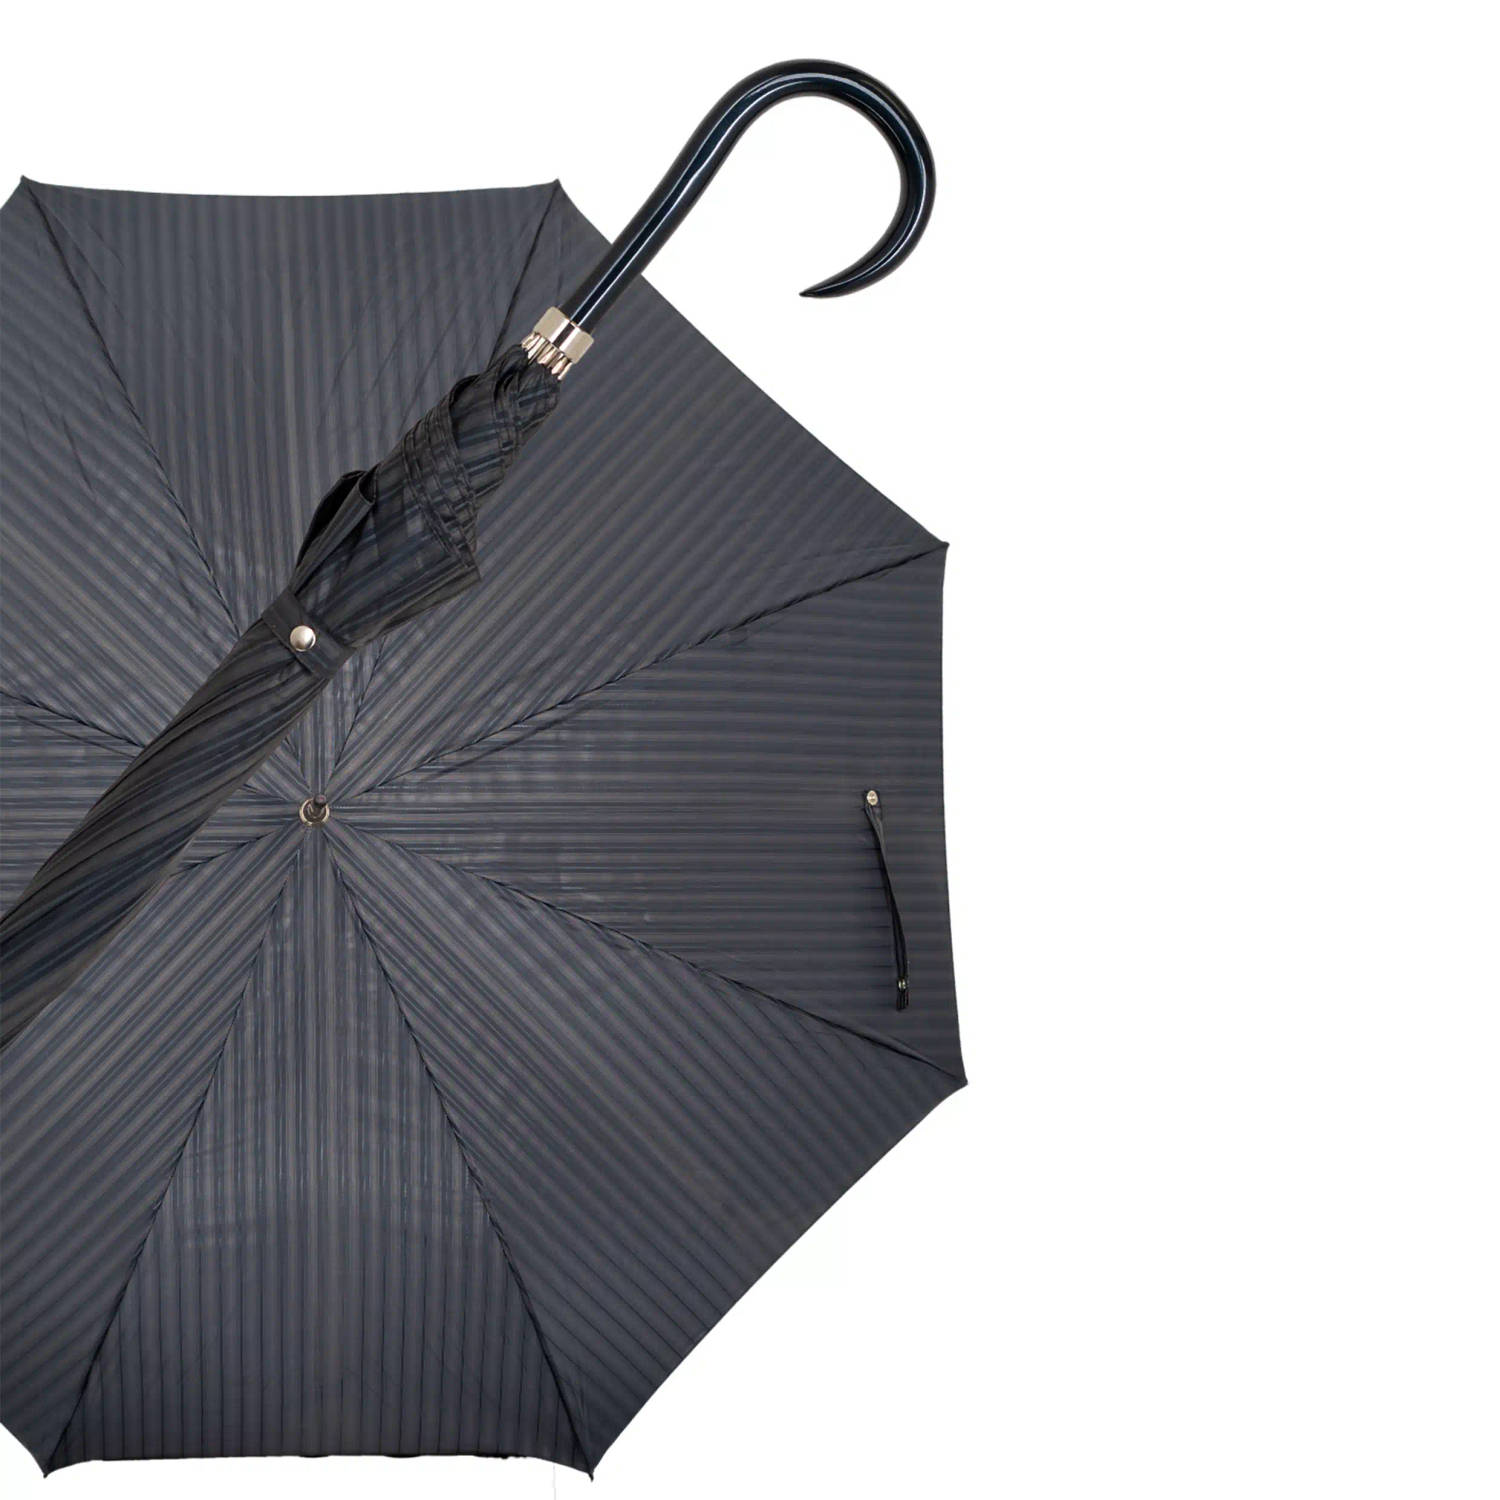 Gastrock Paraplu - Italiaanse satijn stof - Donkergrijs - Luxe paraplu - Lengte 91 cm - Doorsnede doek 61 cm - Aluminium frame - Handvat van metallic gelakt esdoornhout - Paraplu v